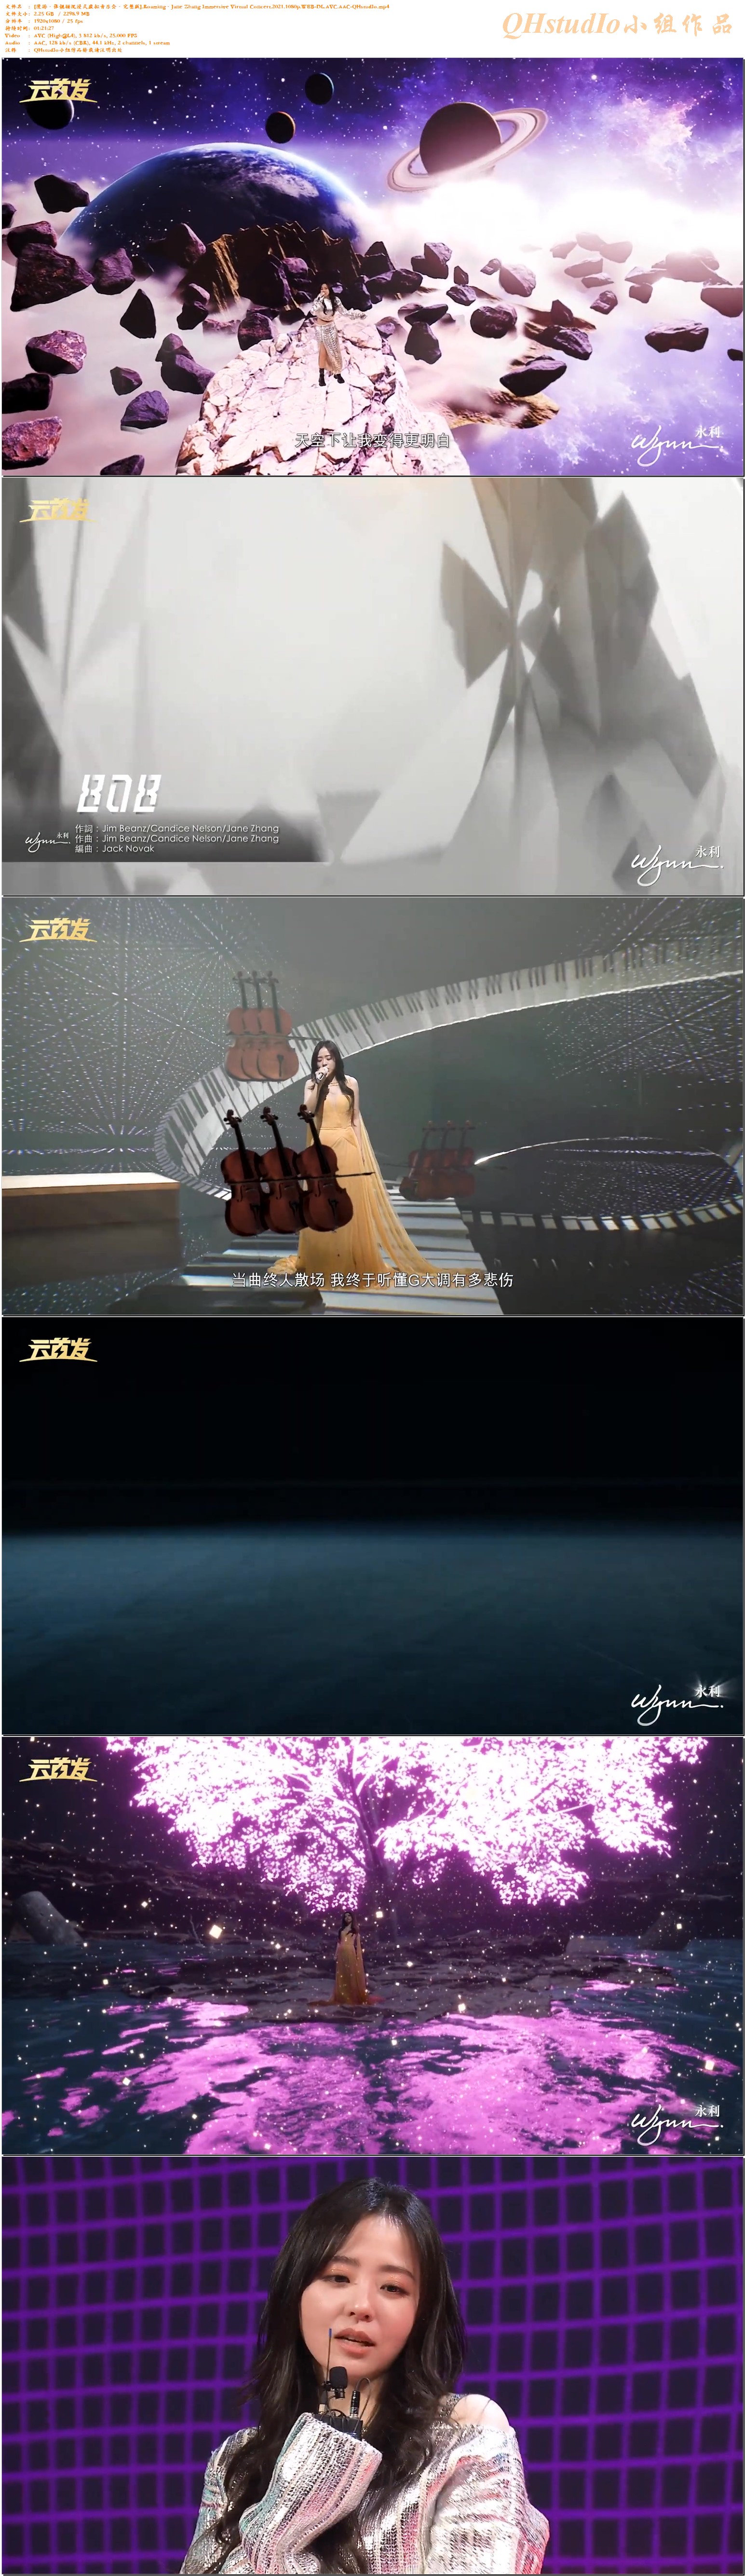 [漫游·张靓颖沉浸式虚拟音乐会·完整版]_Roaming·Jane Zhang Immersive Virtual Concert_2021_1080p_WEB-DL_AVC_AAC-QHstudIo_mp4.jpg